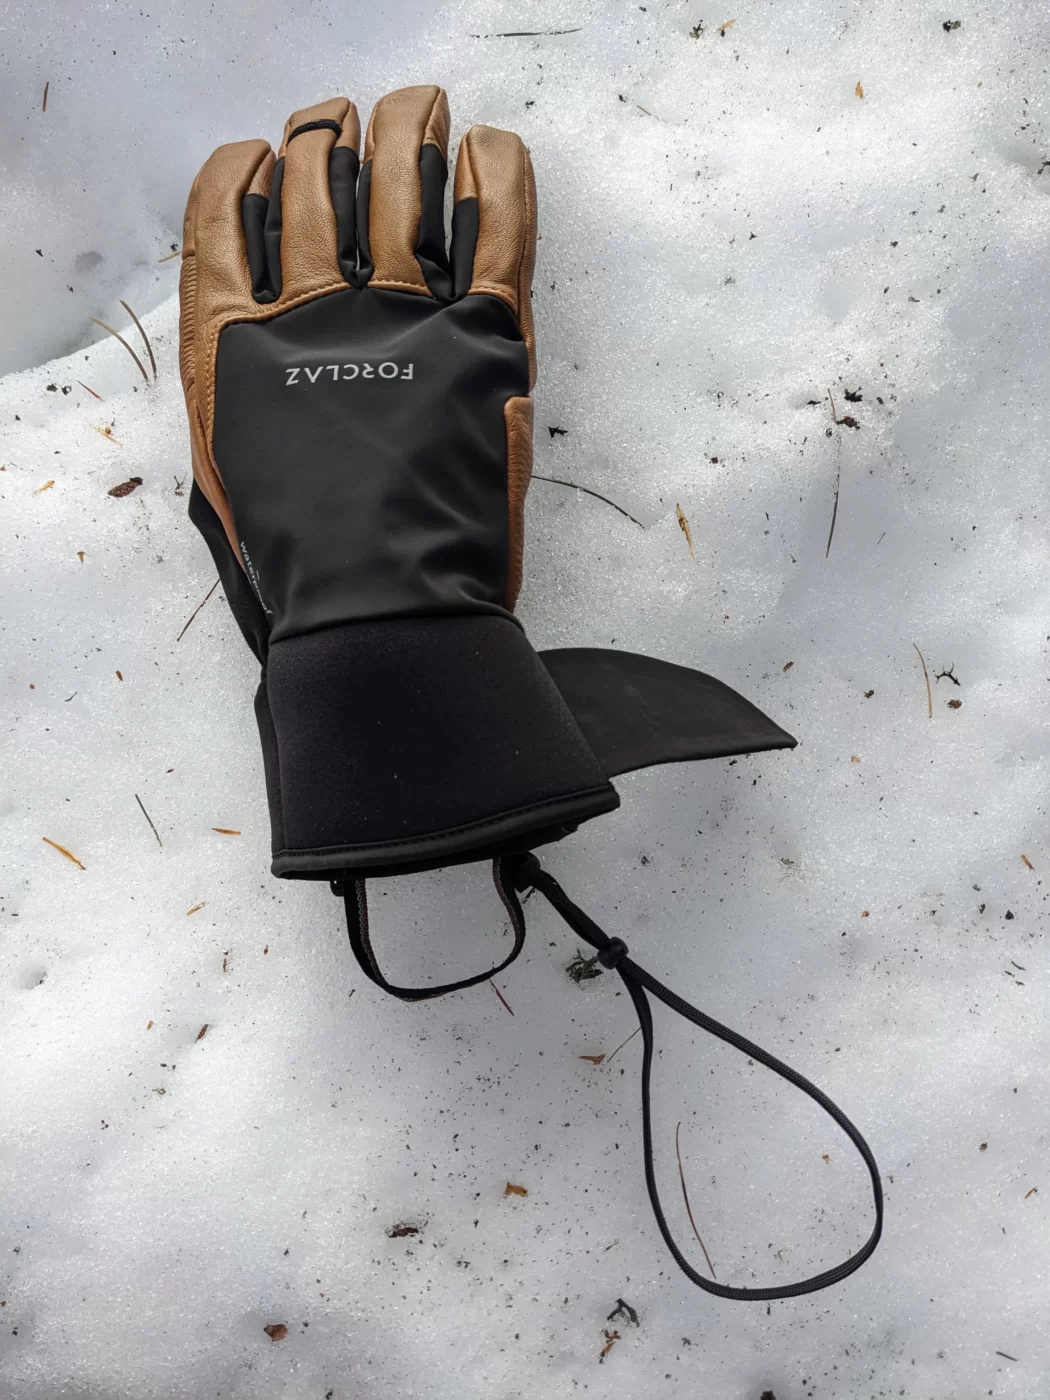 gants dans la neige avec les lanières exposées